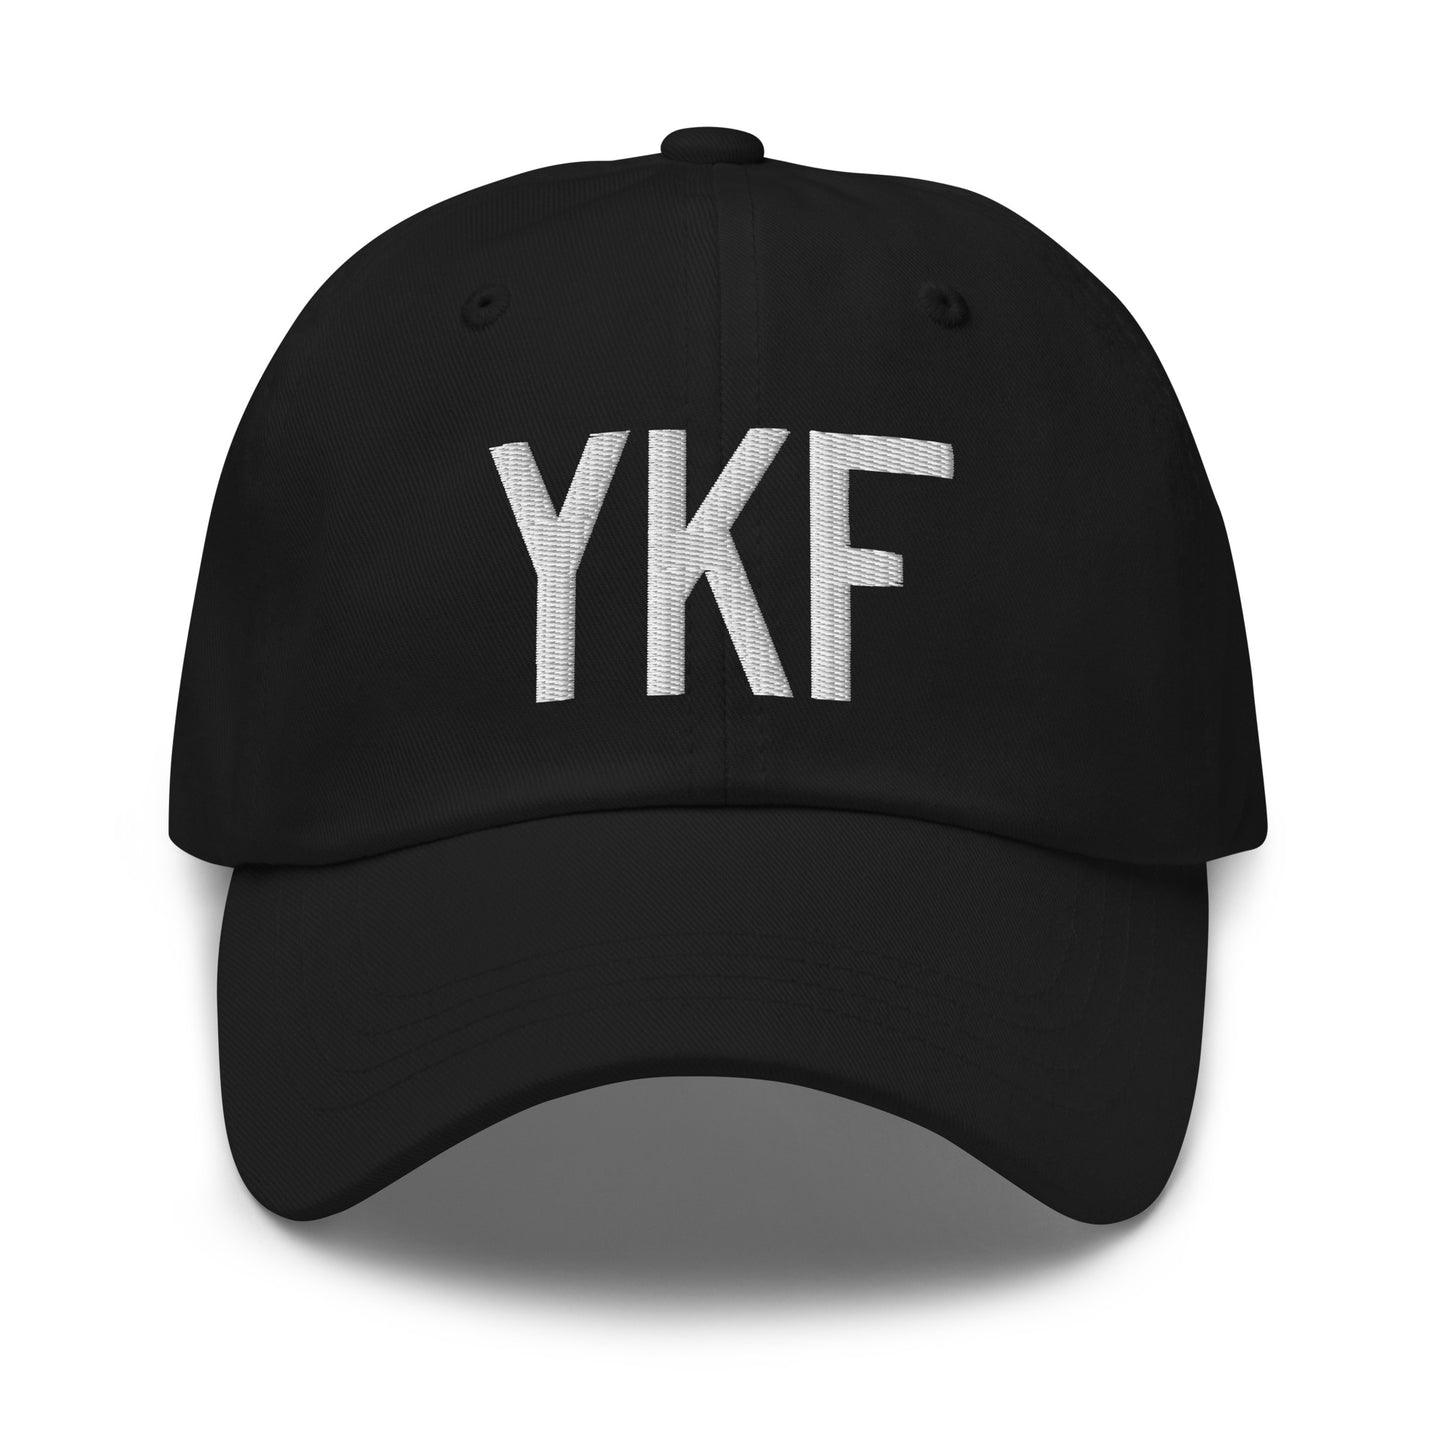 Airport Code Baseball Cap - White • YKF Waterloo • YHM Designs - Image 14